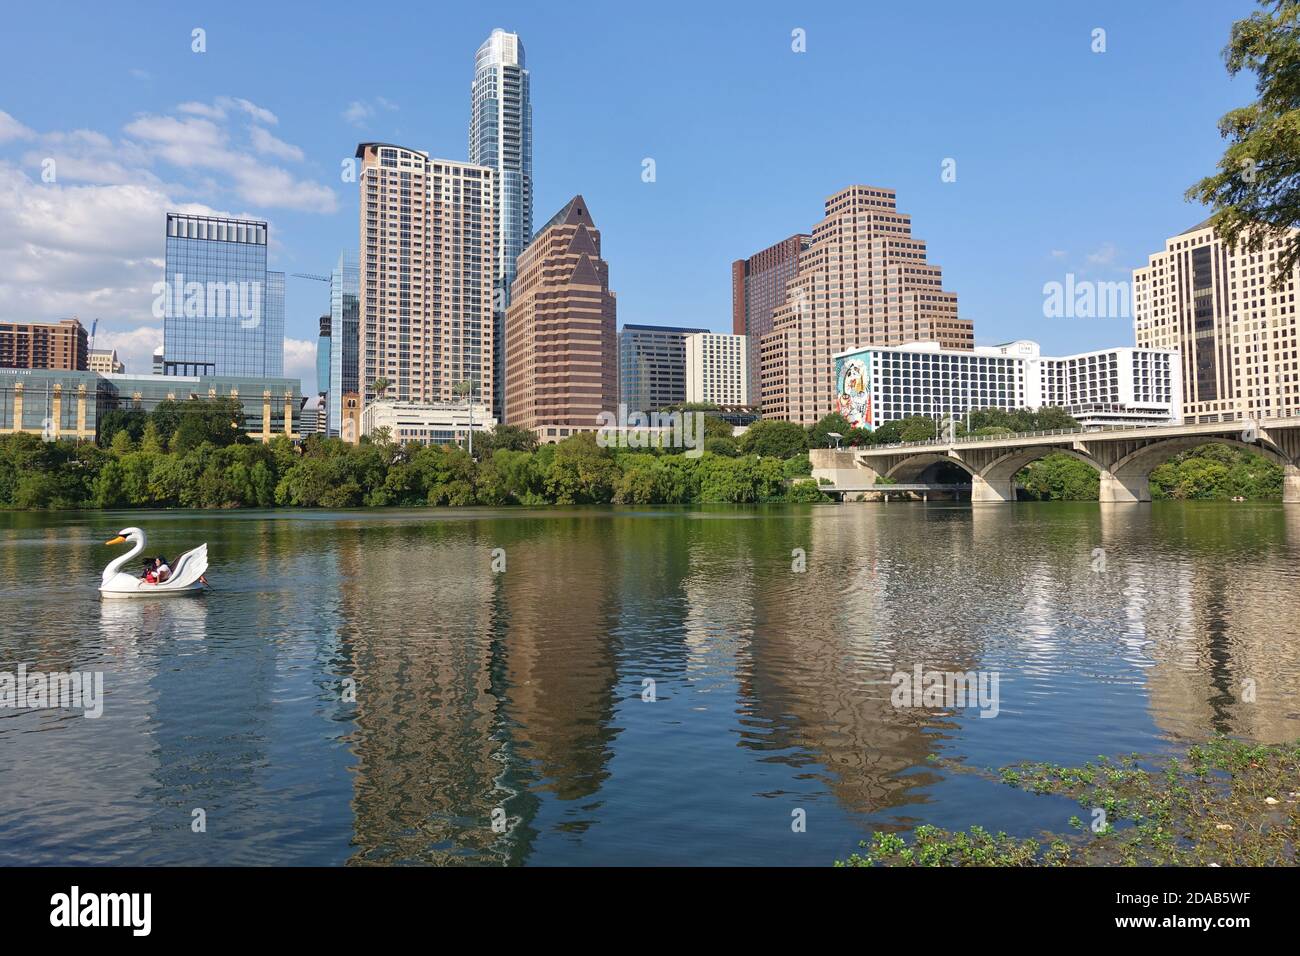 AUSTIN, TX -18 SEP 2020- Blick auf Schwanenradboote auf dem Lady Bird Lake in der Innenstadt von Austin, Texas, USA. Stockfoto